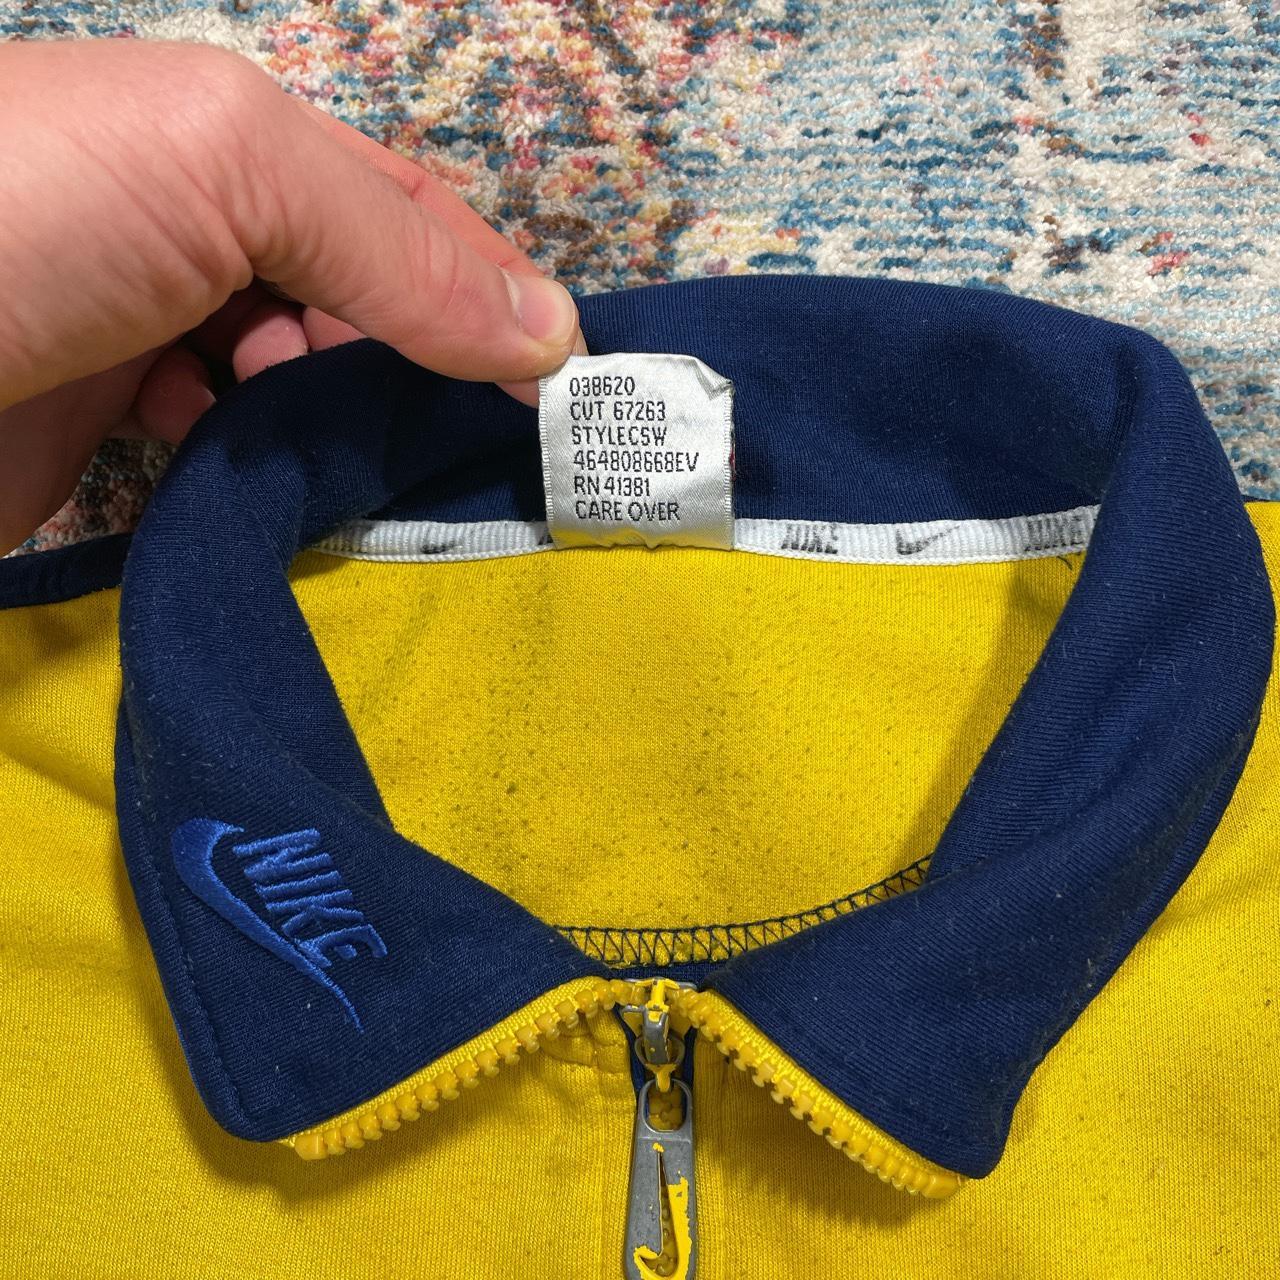 Vintage Nike Navy and Yellow 1/4 Zip Sweatshirt